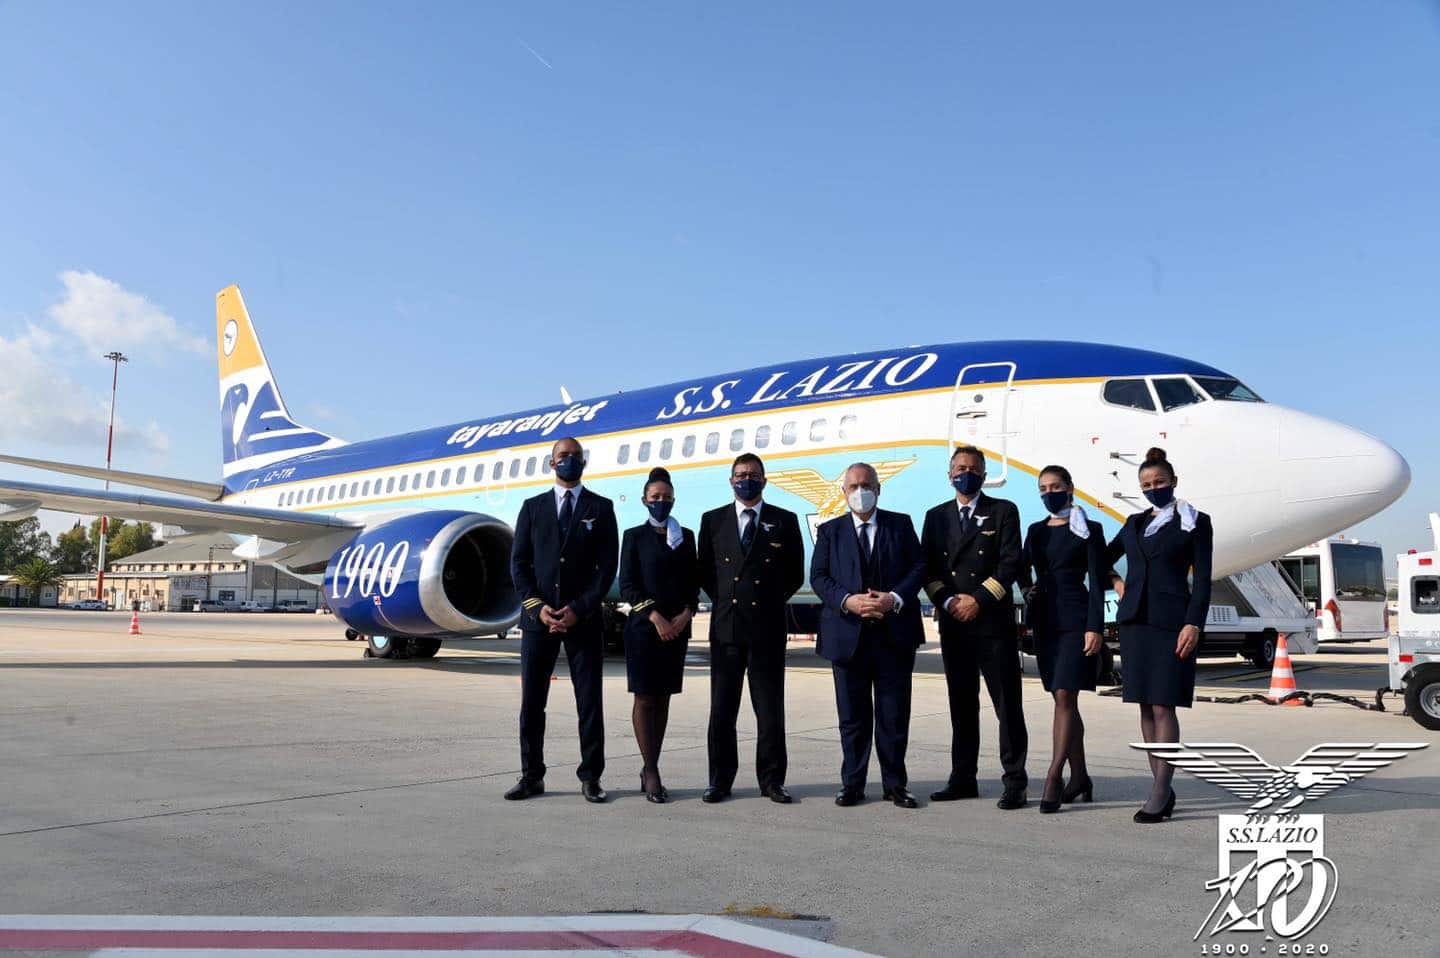 Il nuovo aereo della Lazio - ©Facebook/S.S. Lazio